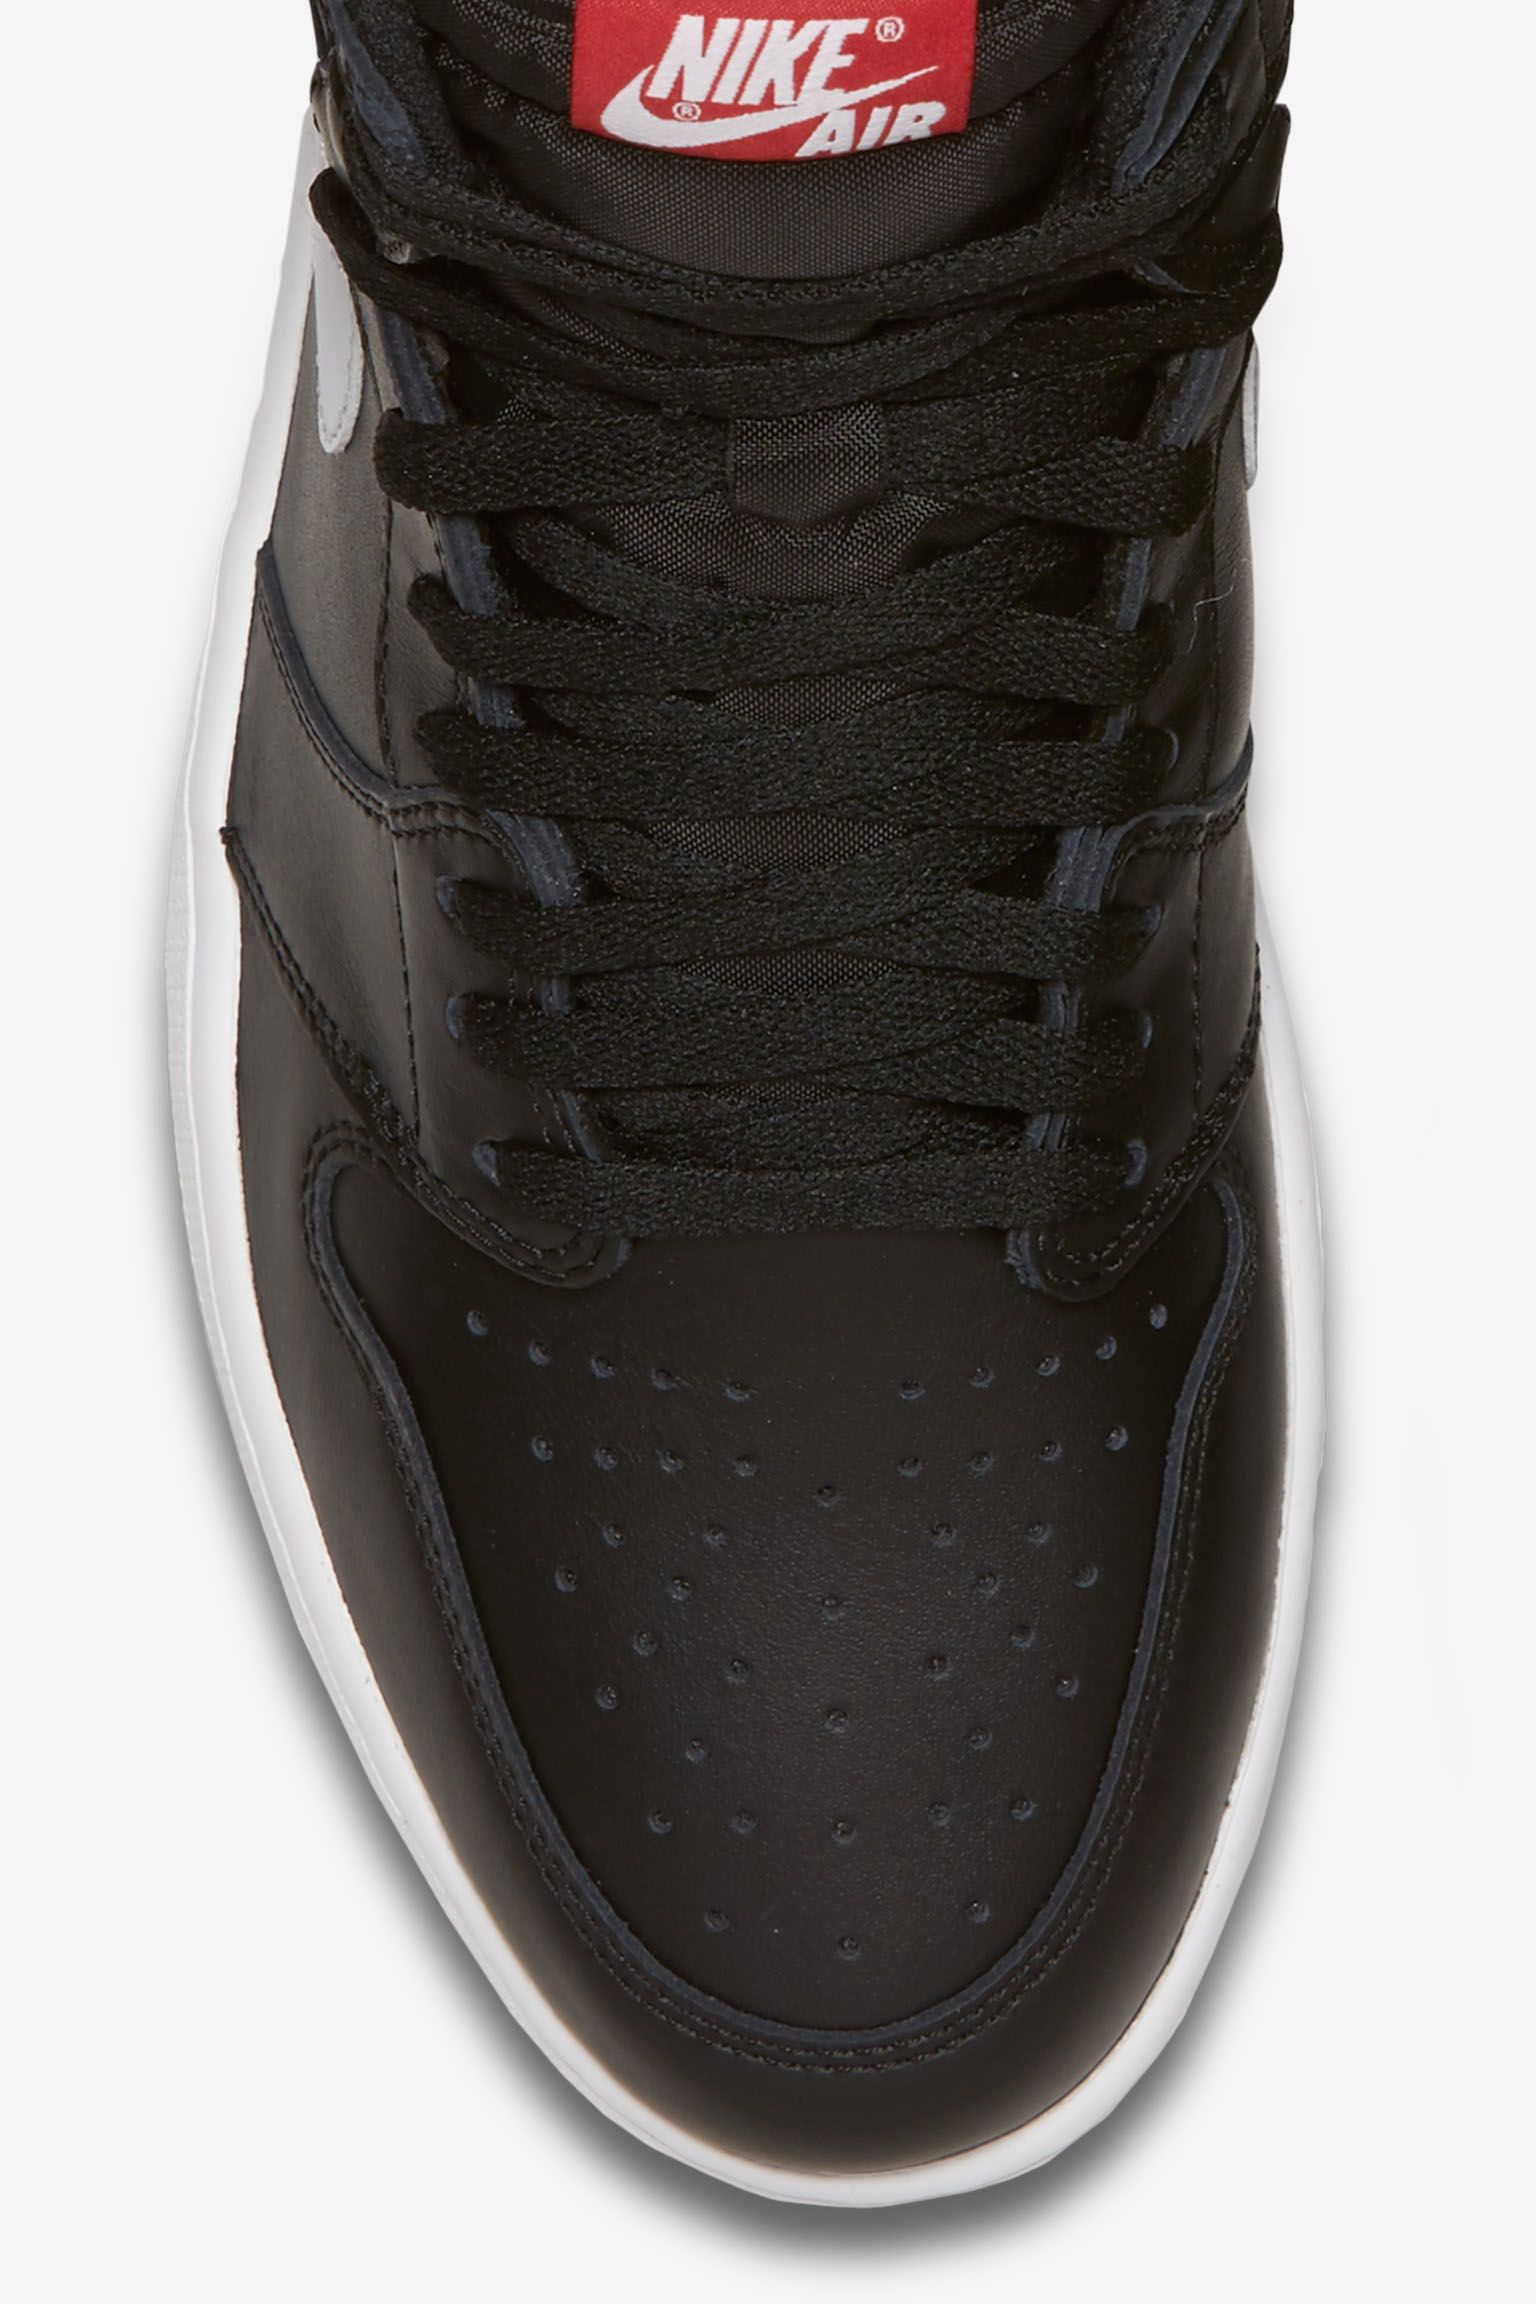 Air Jordan 1 Retro High OG 'Black & White' Release Date. Nike SNKRS رفرف